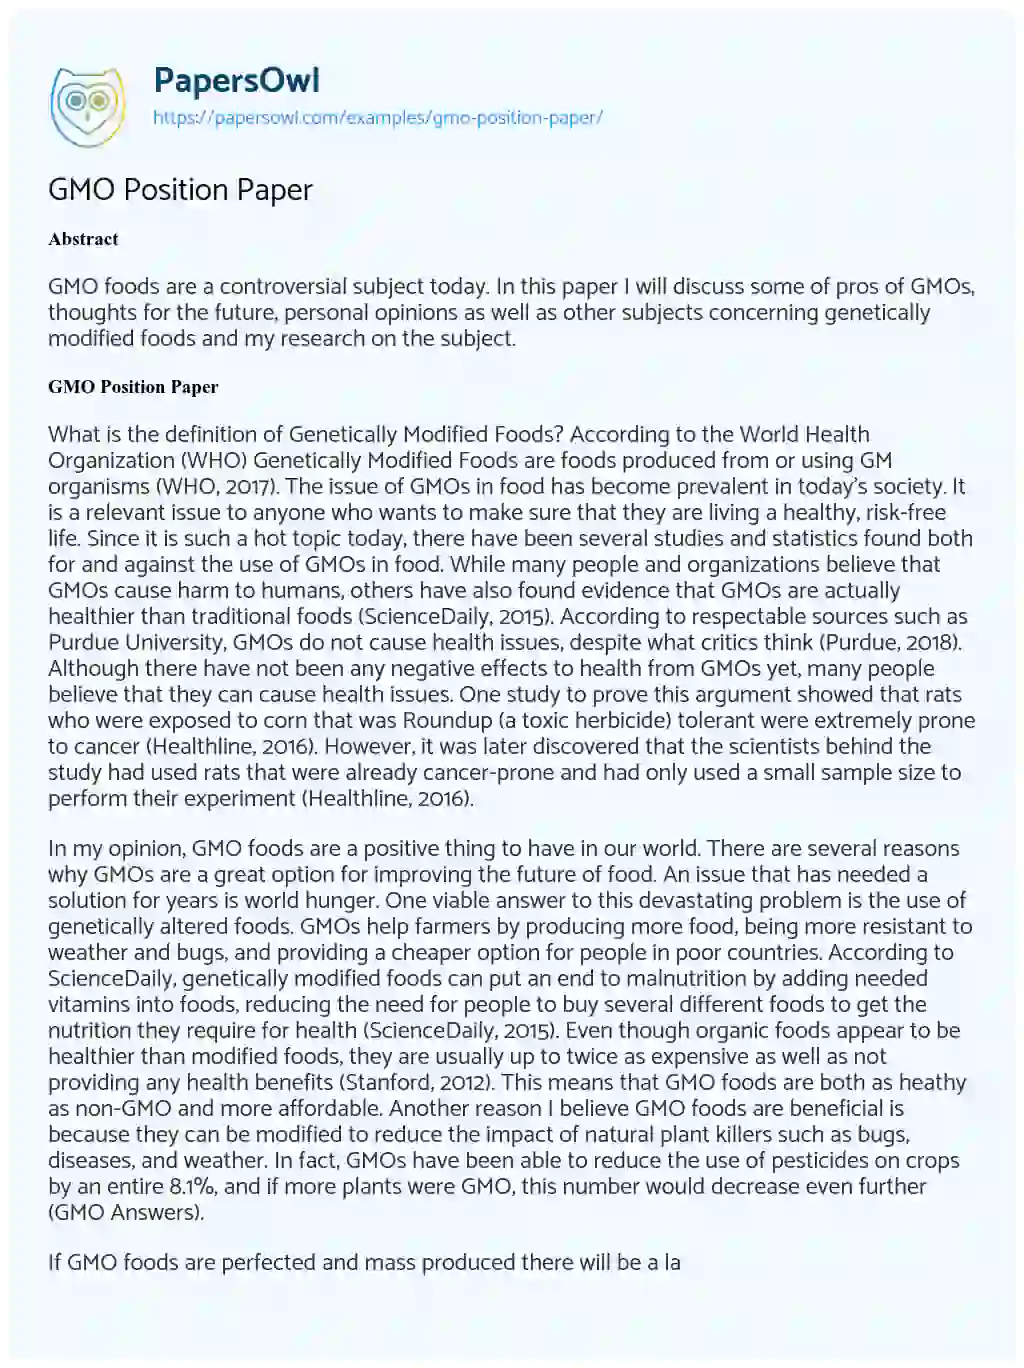 GMO Position Paper essay